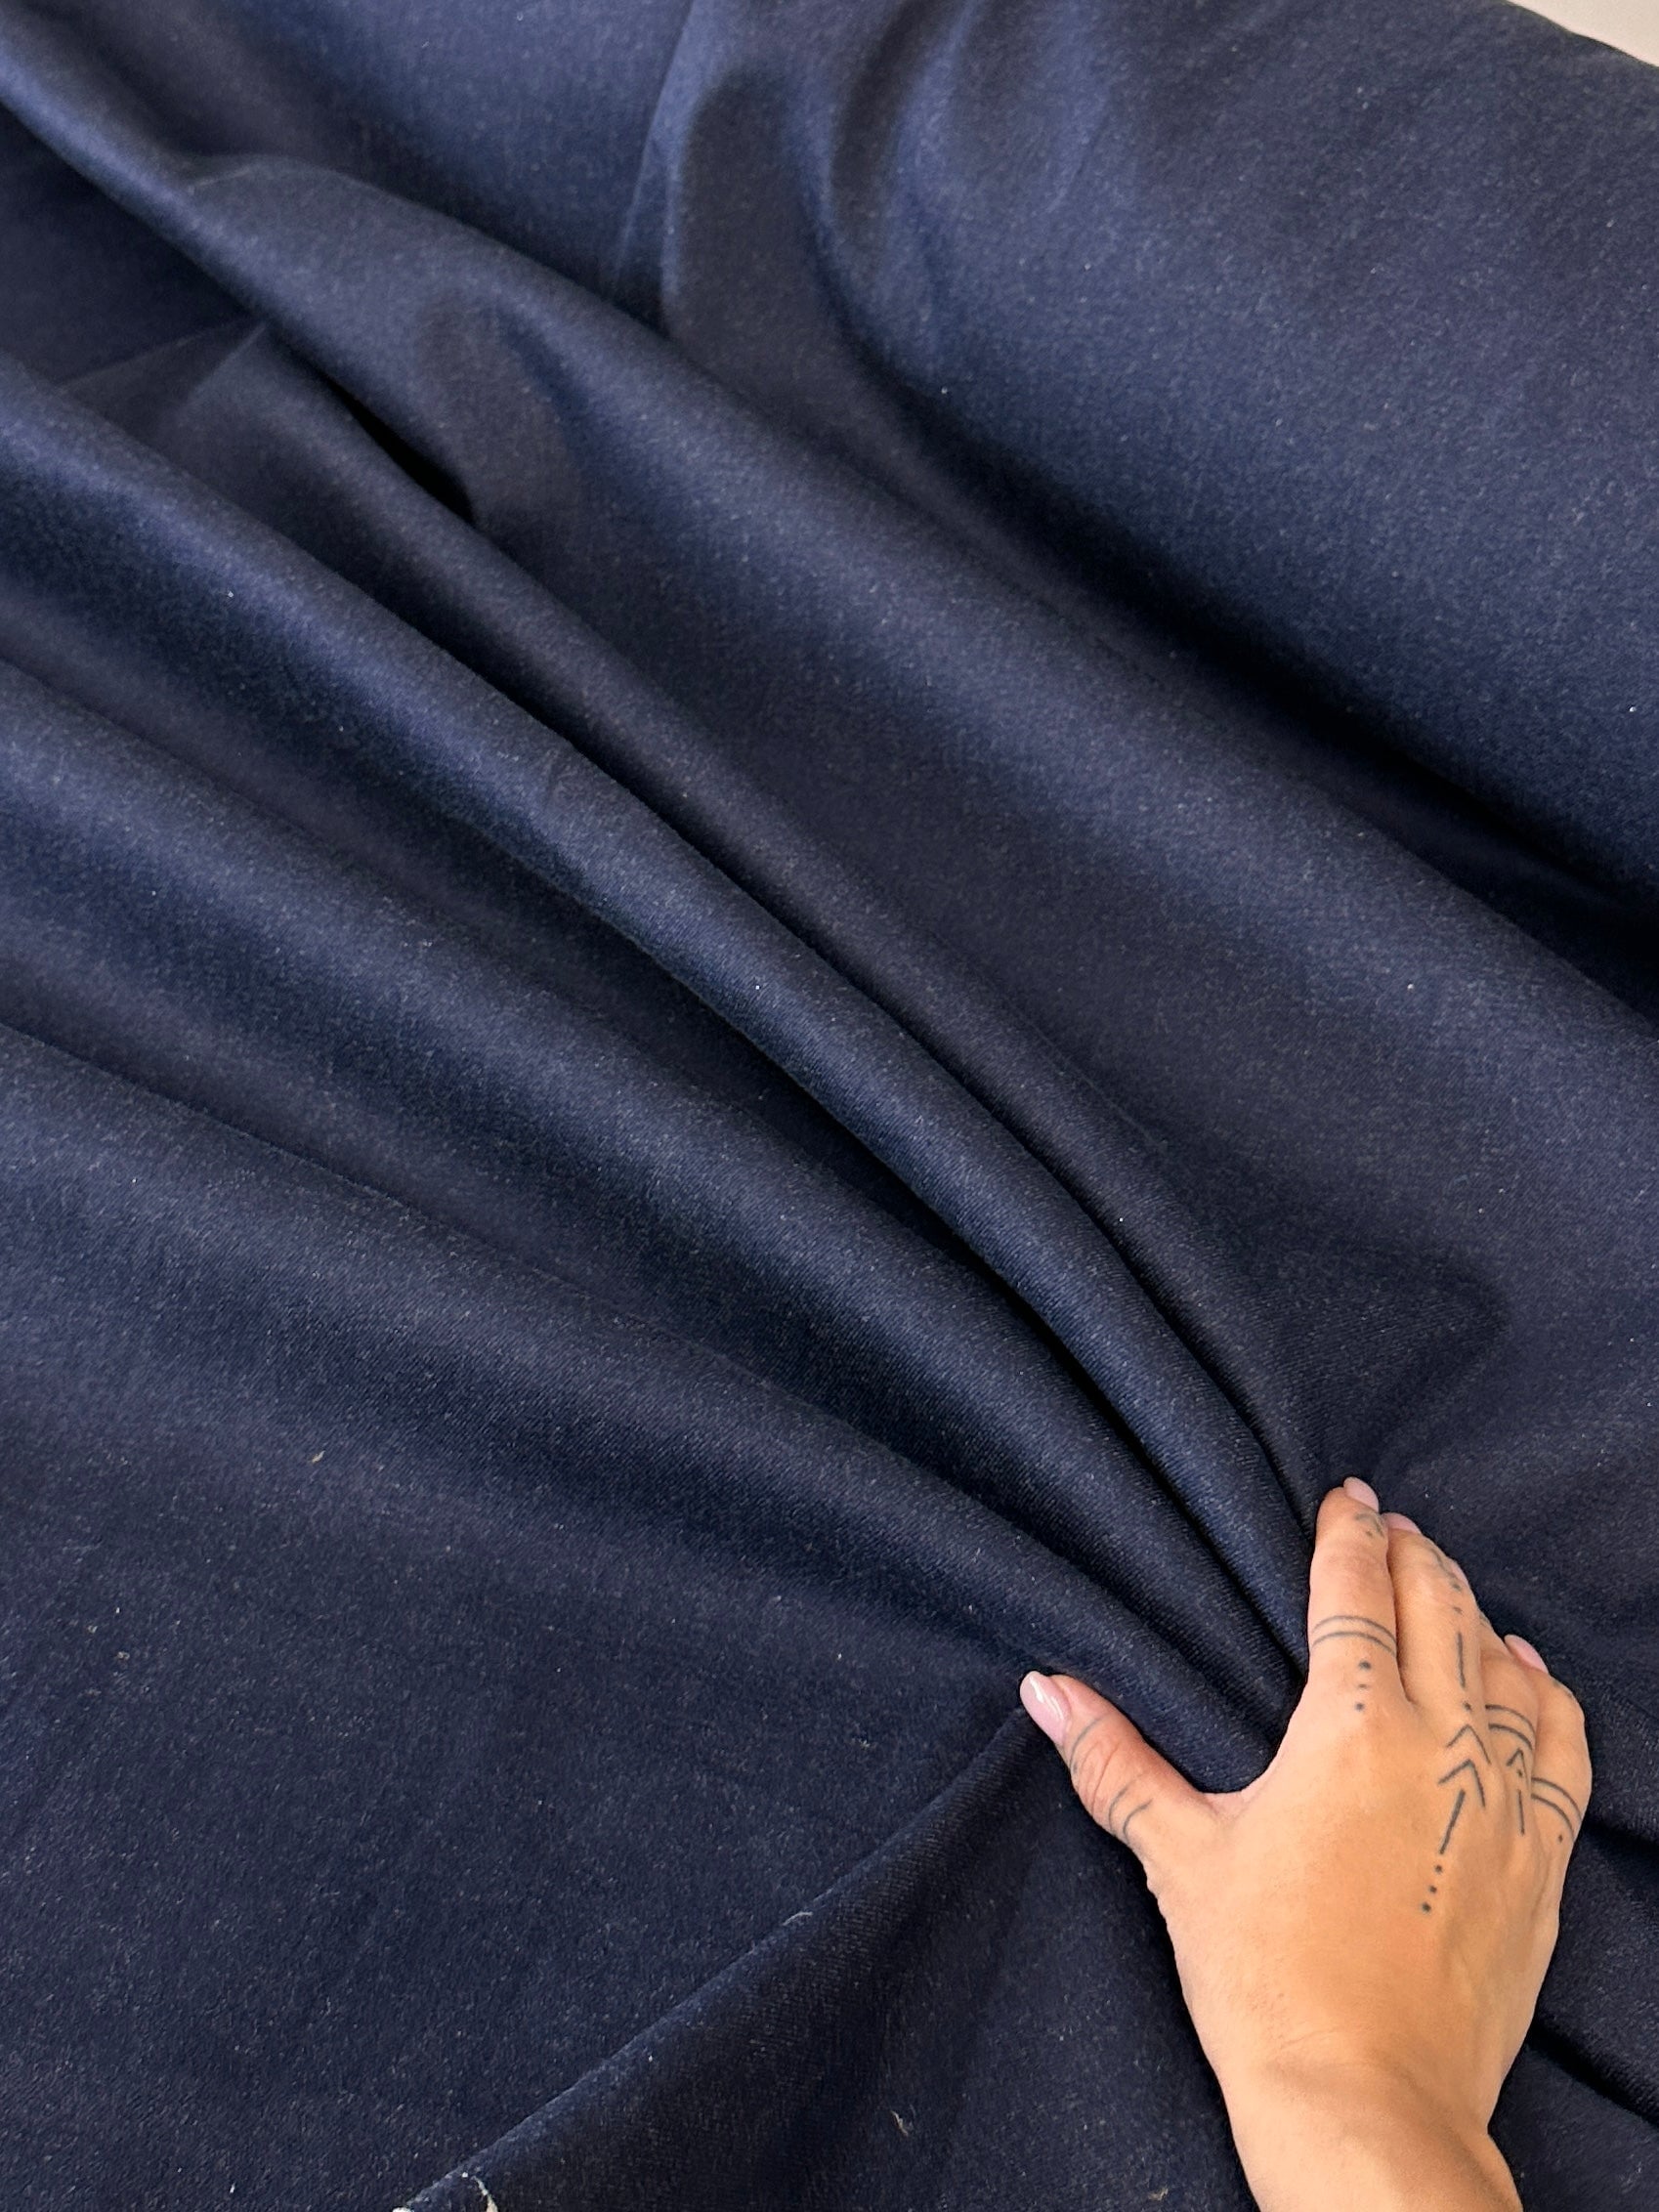 Navy Blue Stretch Cotton Denim, Dark Blue Bull Denim, Twill Woven Denim, Denim for Apparel, Pants, Navy Jeans Fabric, Medium weight Denim, Denim for jackets, Denim on sale, Denim on discount, Premium Denim, buy denim online, best quality denim